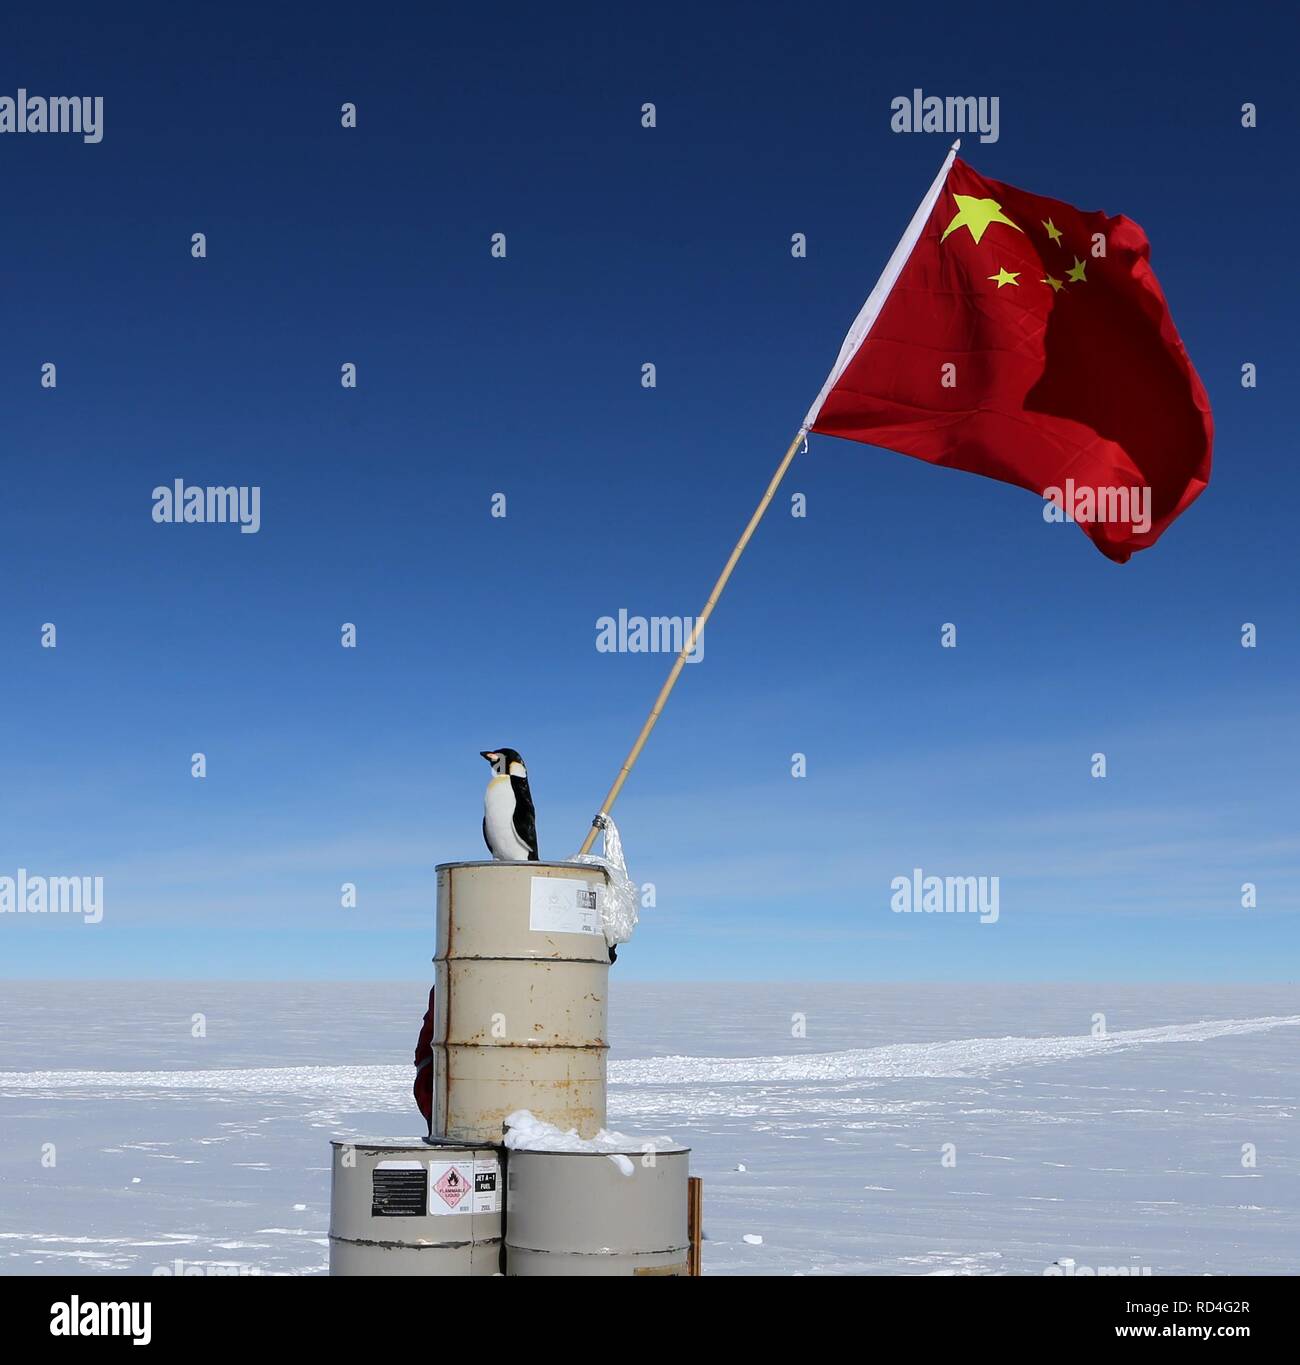 Peking, Antarktis, China. 16 Jan, 2019. Der chinesischen Nationalflagge ist im Bereich der Dome Argus (Dome A), die Spitze der Antarktis inland Eiskappe gesehen, in der Antarktis, Jan. 16, 2019. Credit: Liu Shiping/Xinhua/Alamy leben Nachrichten Stockfoto